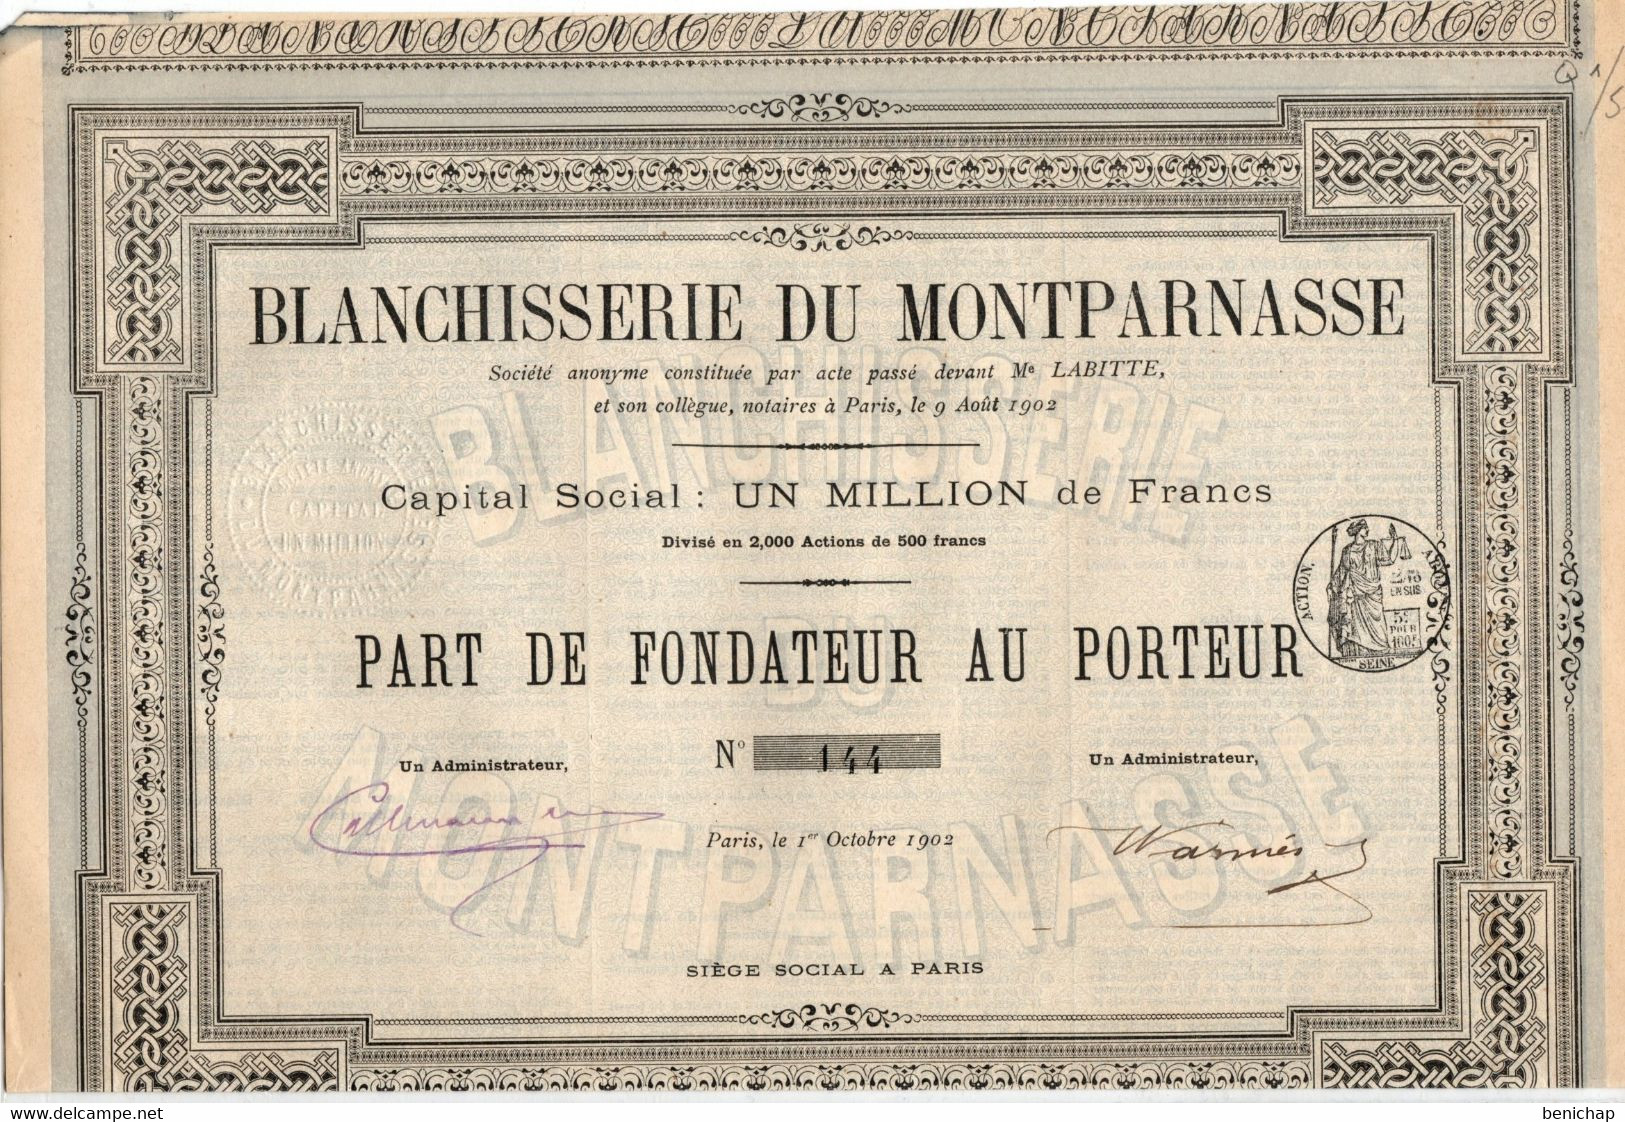 Blanchisserie Du Montparnasse S.A.- Part De Fondateur Au Porteur - Paris Octobre 1902. - Textile